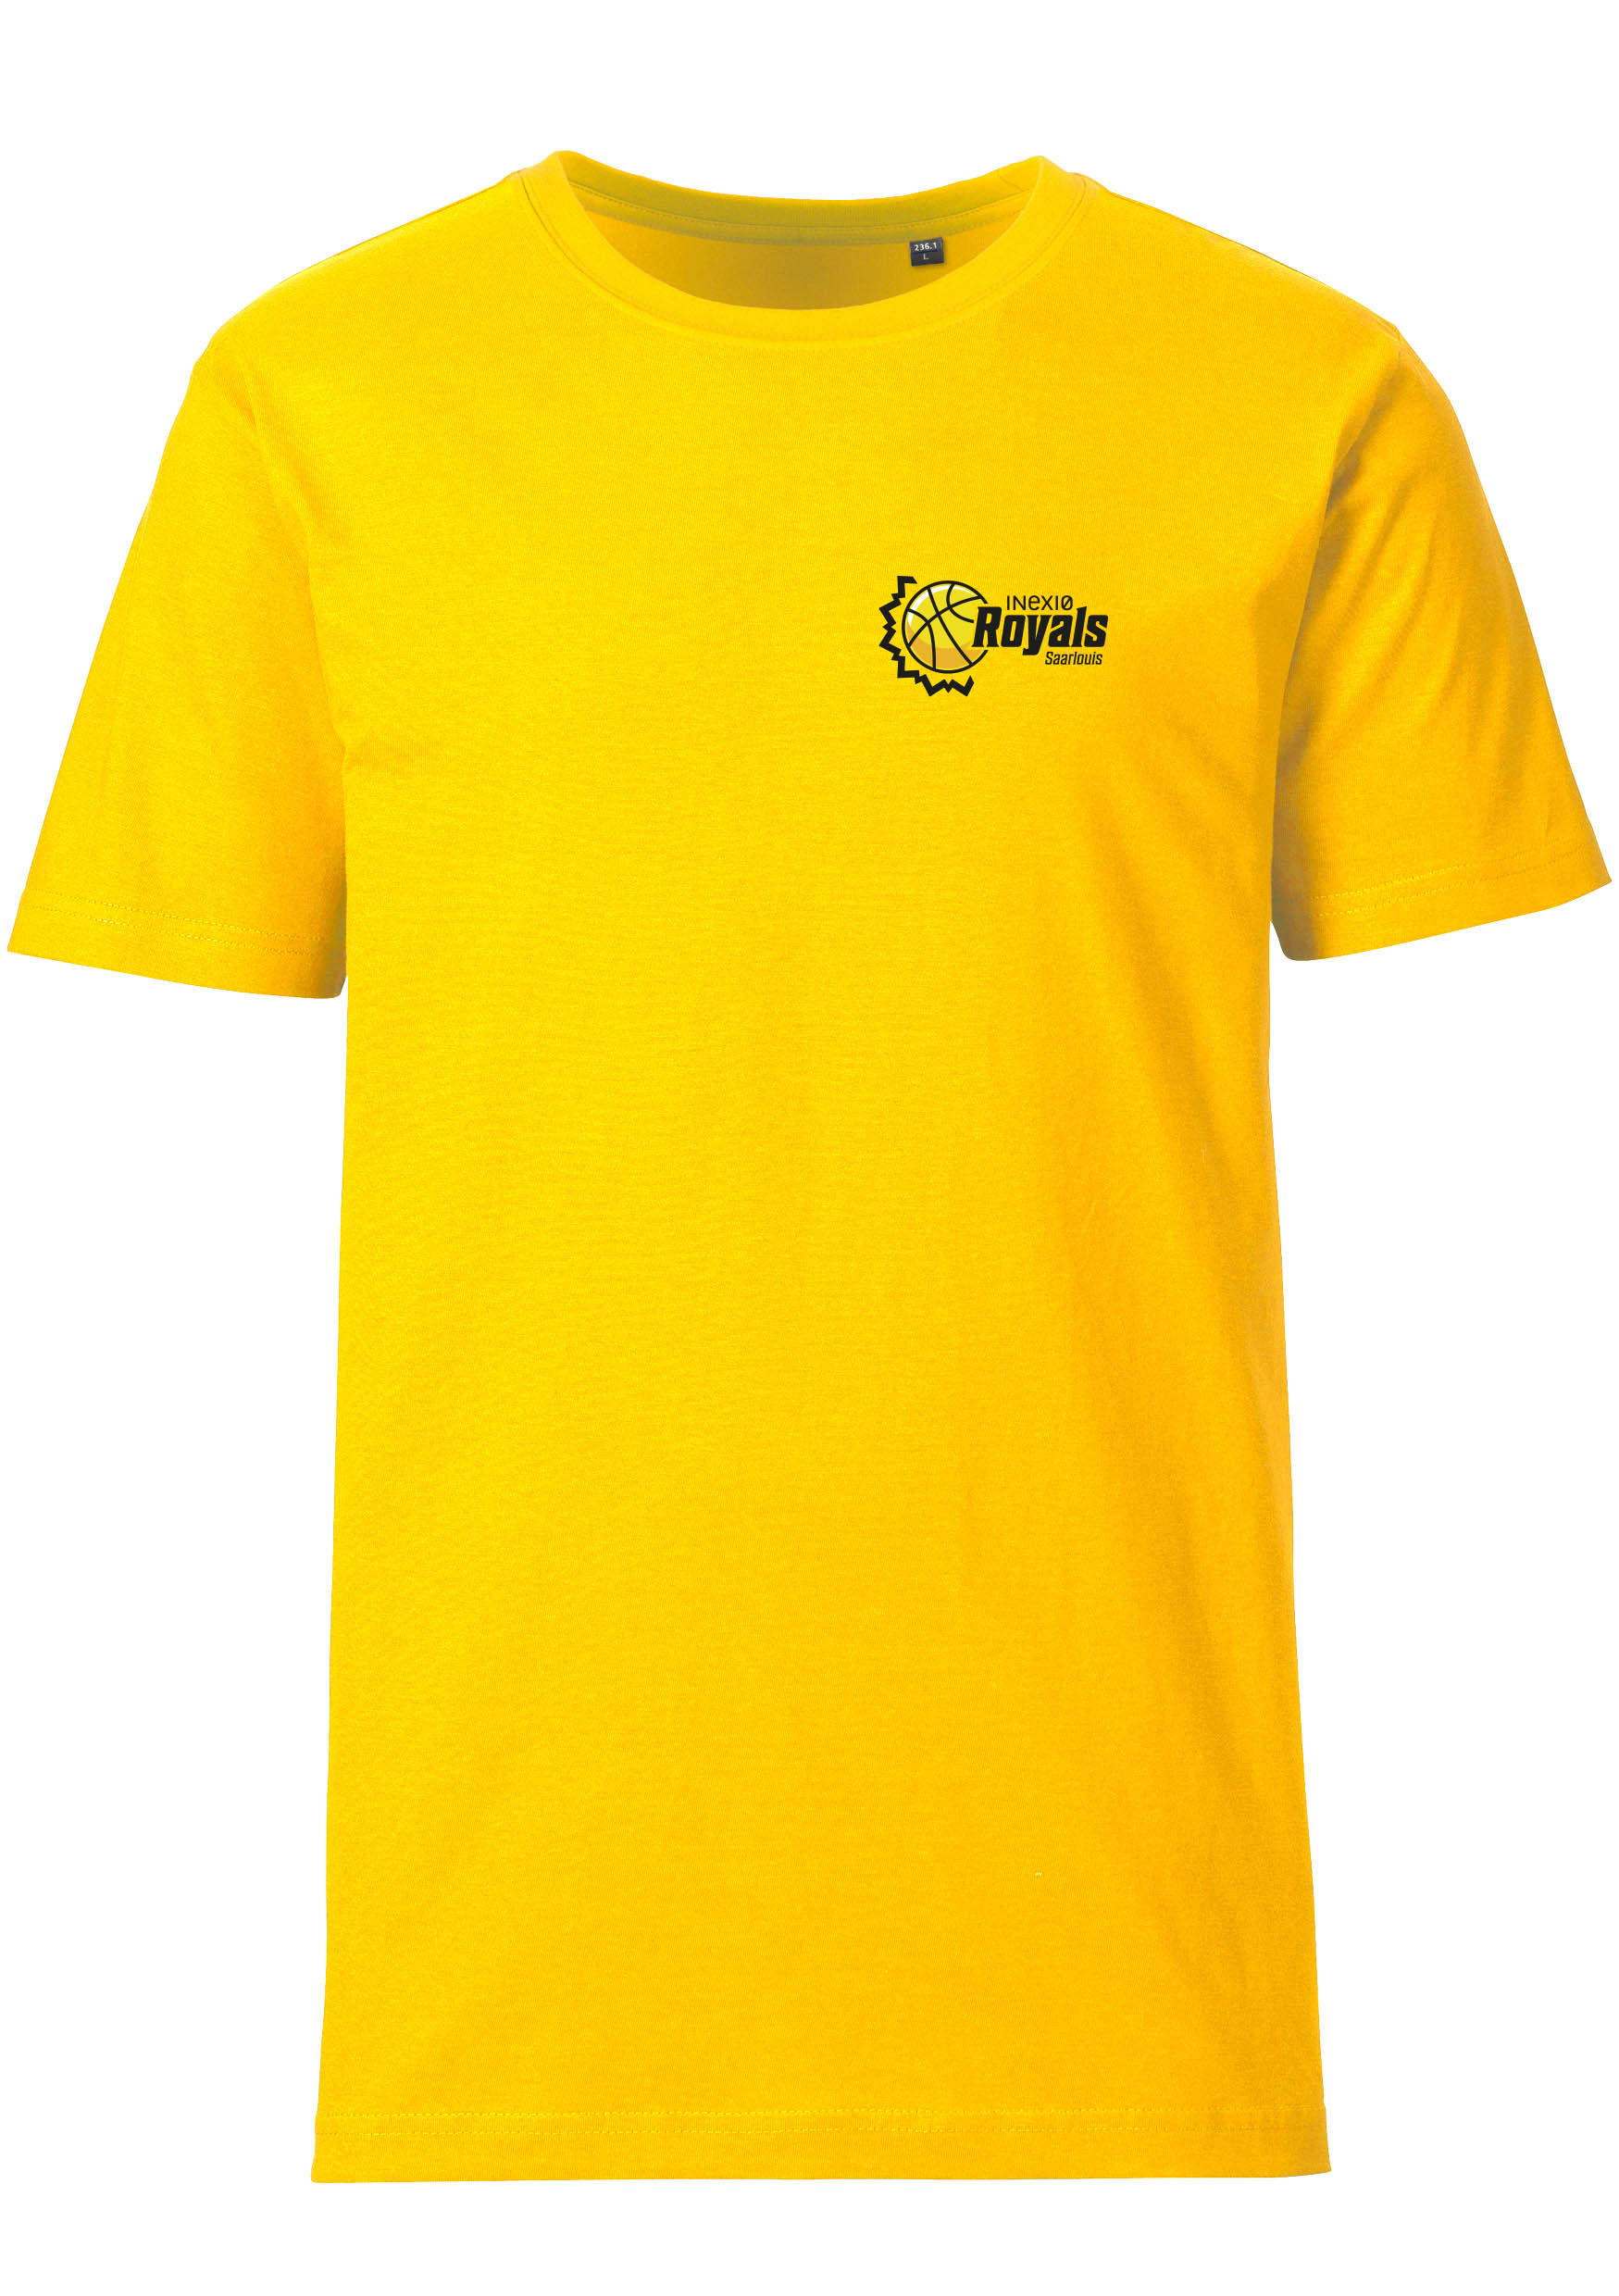 Royals T-Shirt Herren kleines Logo